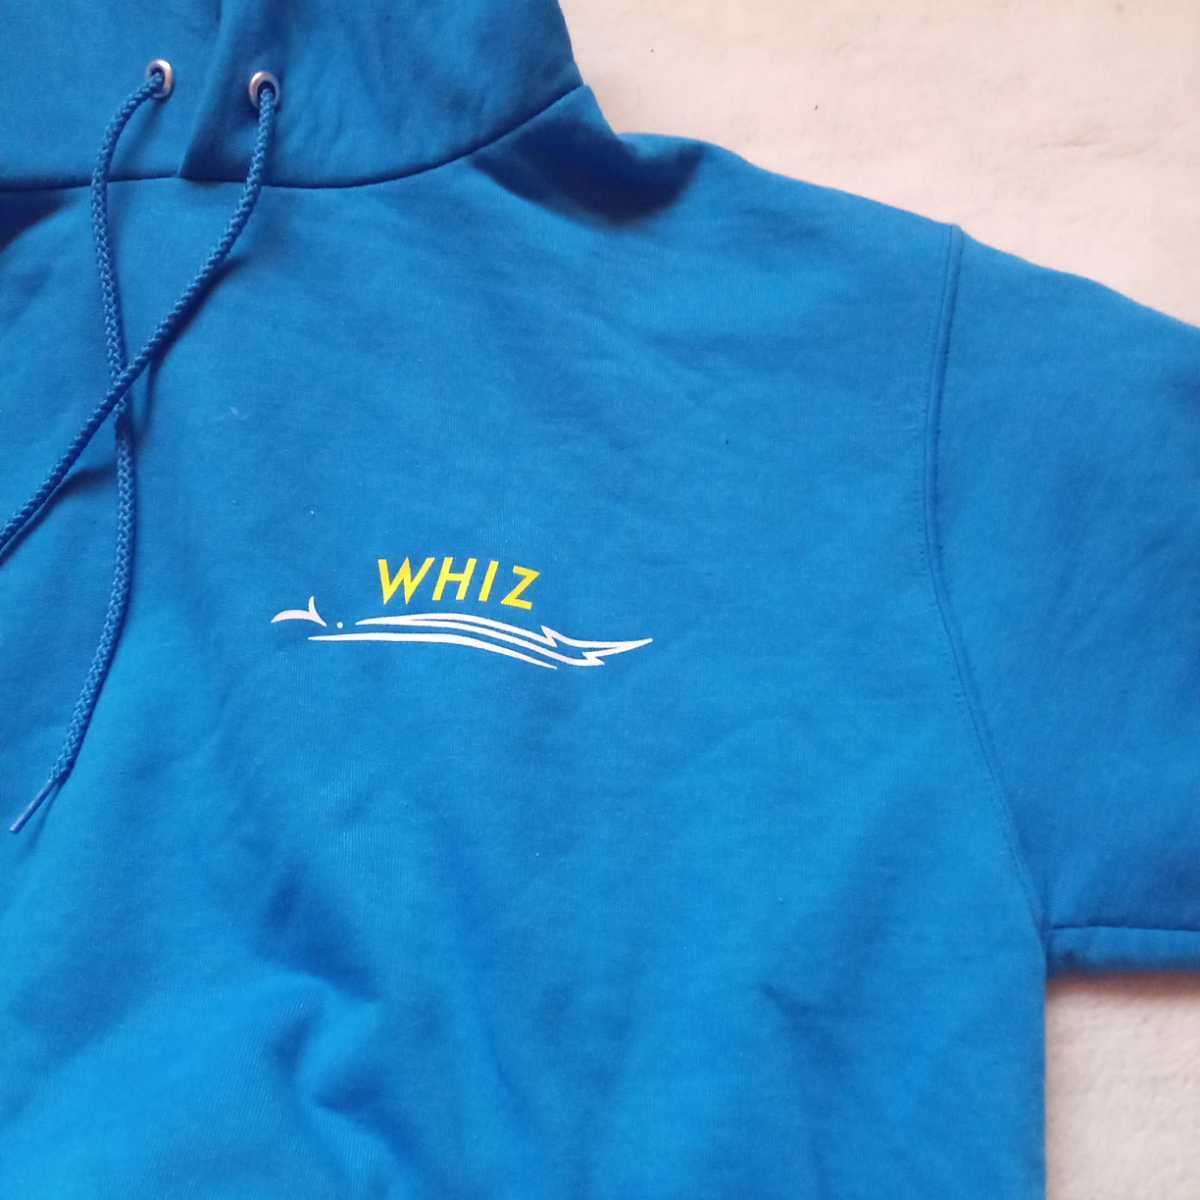 WHIZ limited スウェット トレーナー サーマル ウィズリミテッド スウェット 【正規販売店】